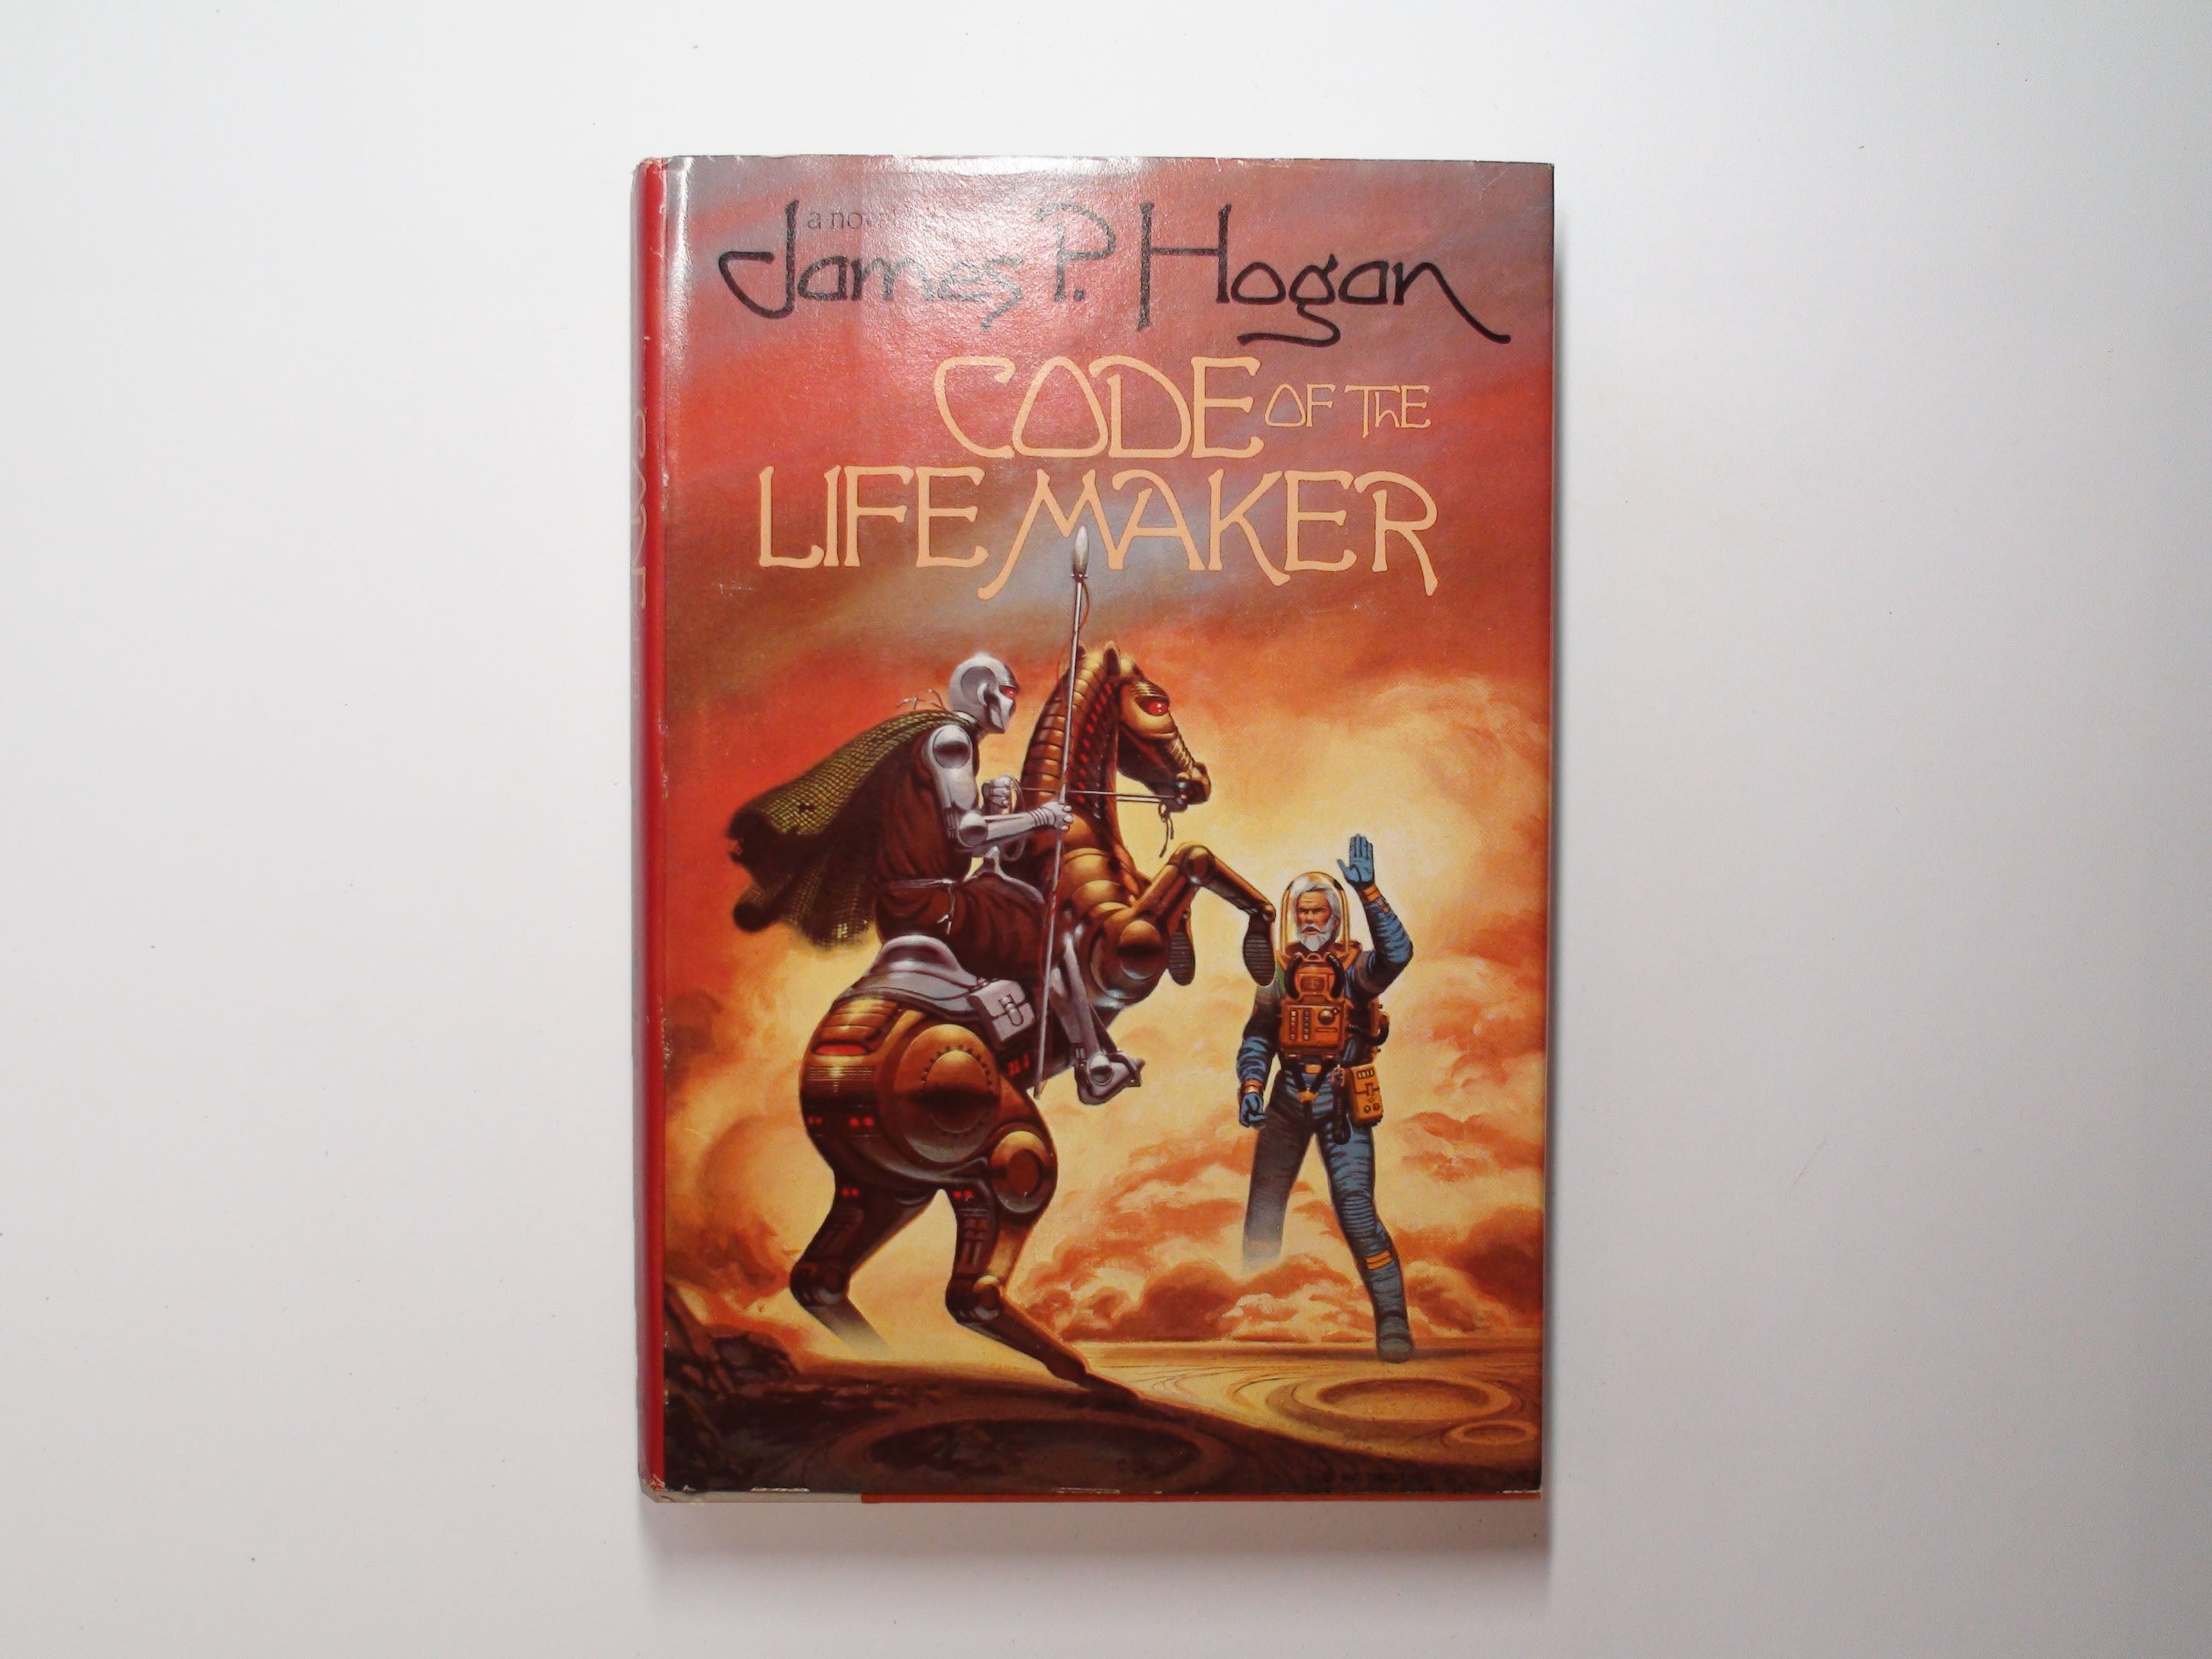 Code of the Life Maker by James P. Hogan, Book Club Ed. w/ DJ, 1983